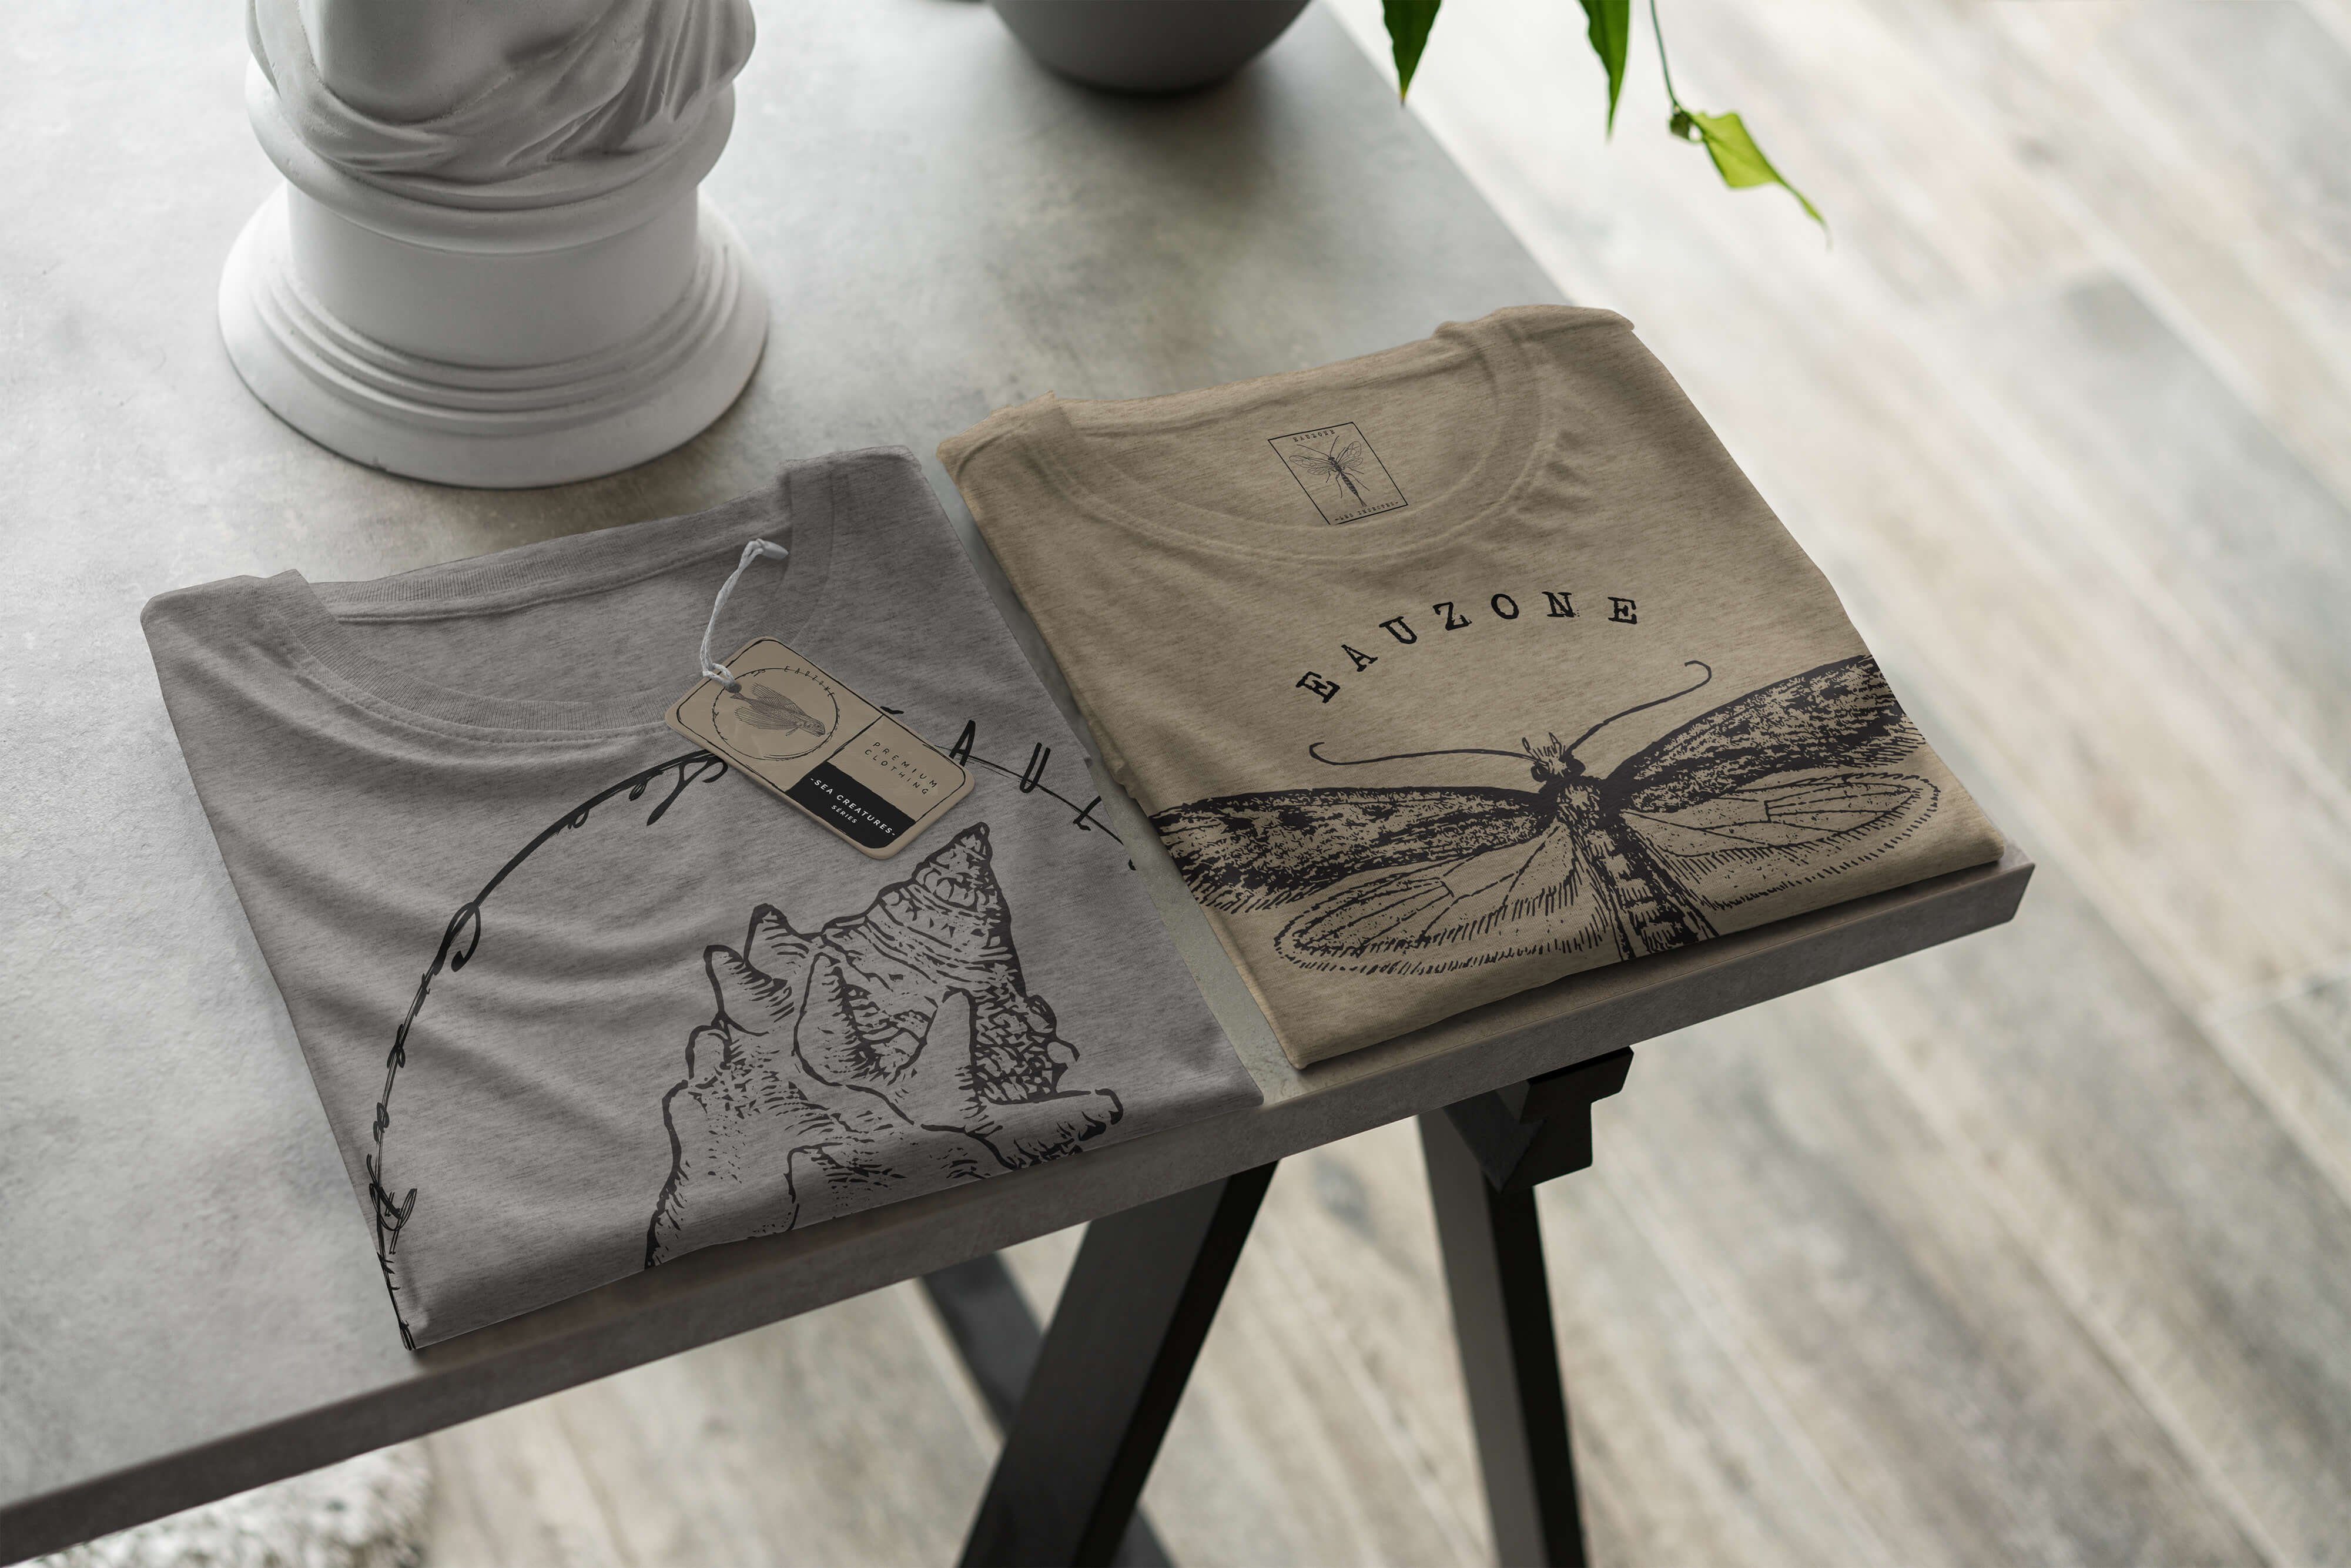 Sinus Art T-Shirt T-Shirt Tiefsee und 023 Sea feine Struktur Sea / - sportlicher Serie: Schnitt Fische Creatures, Ash